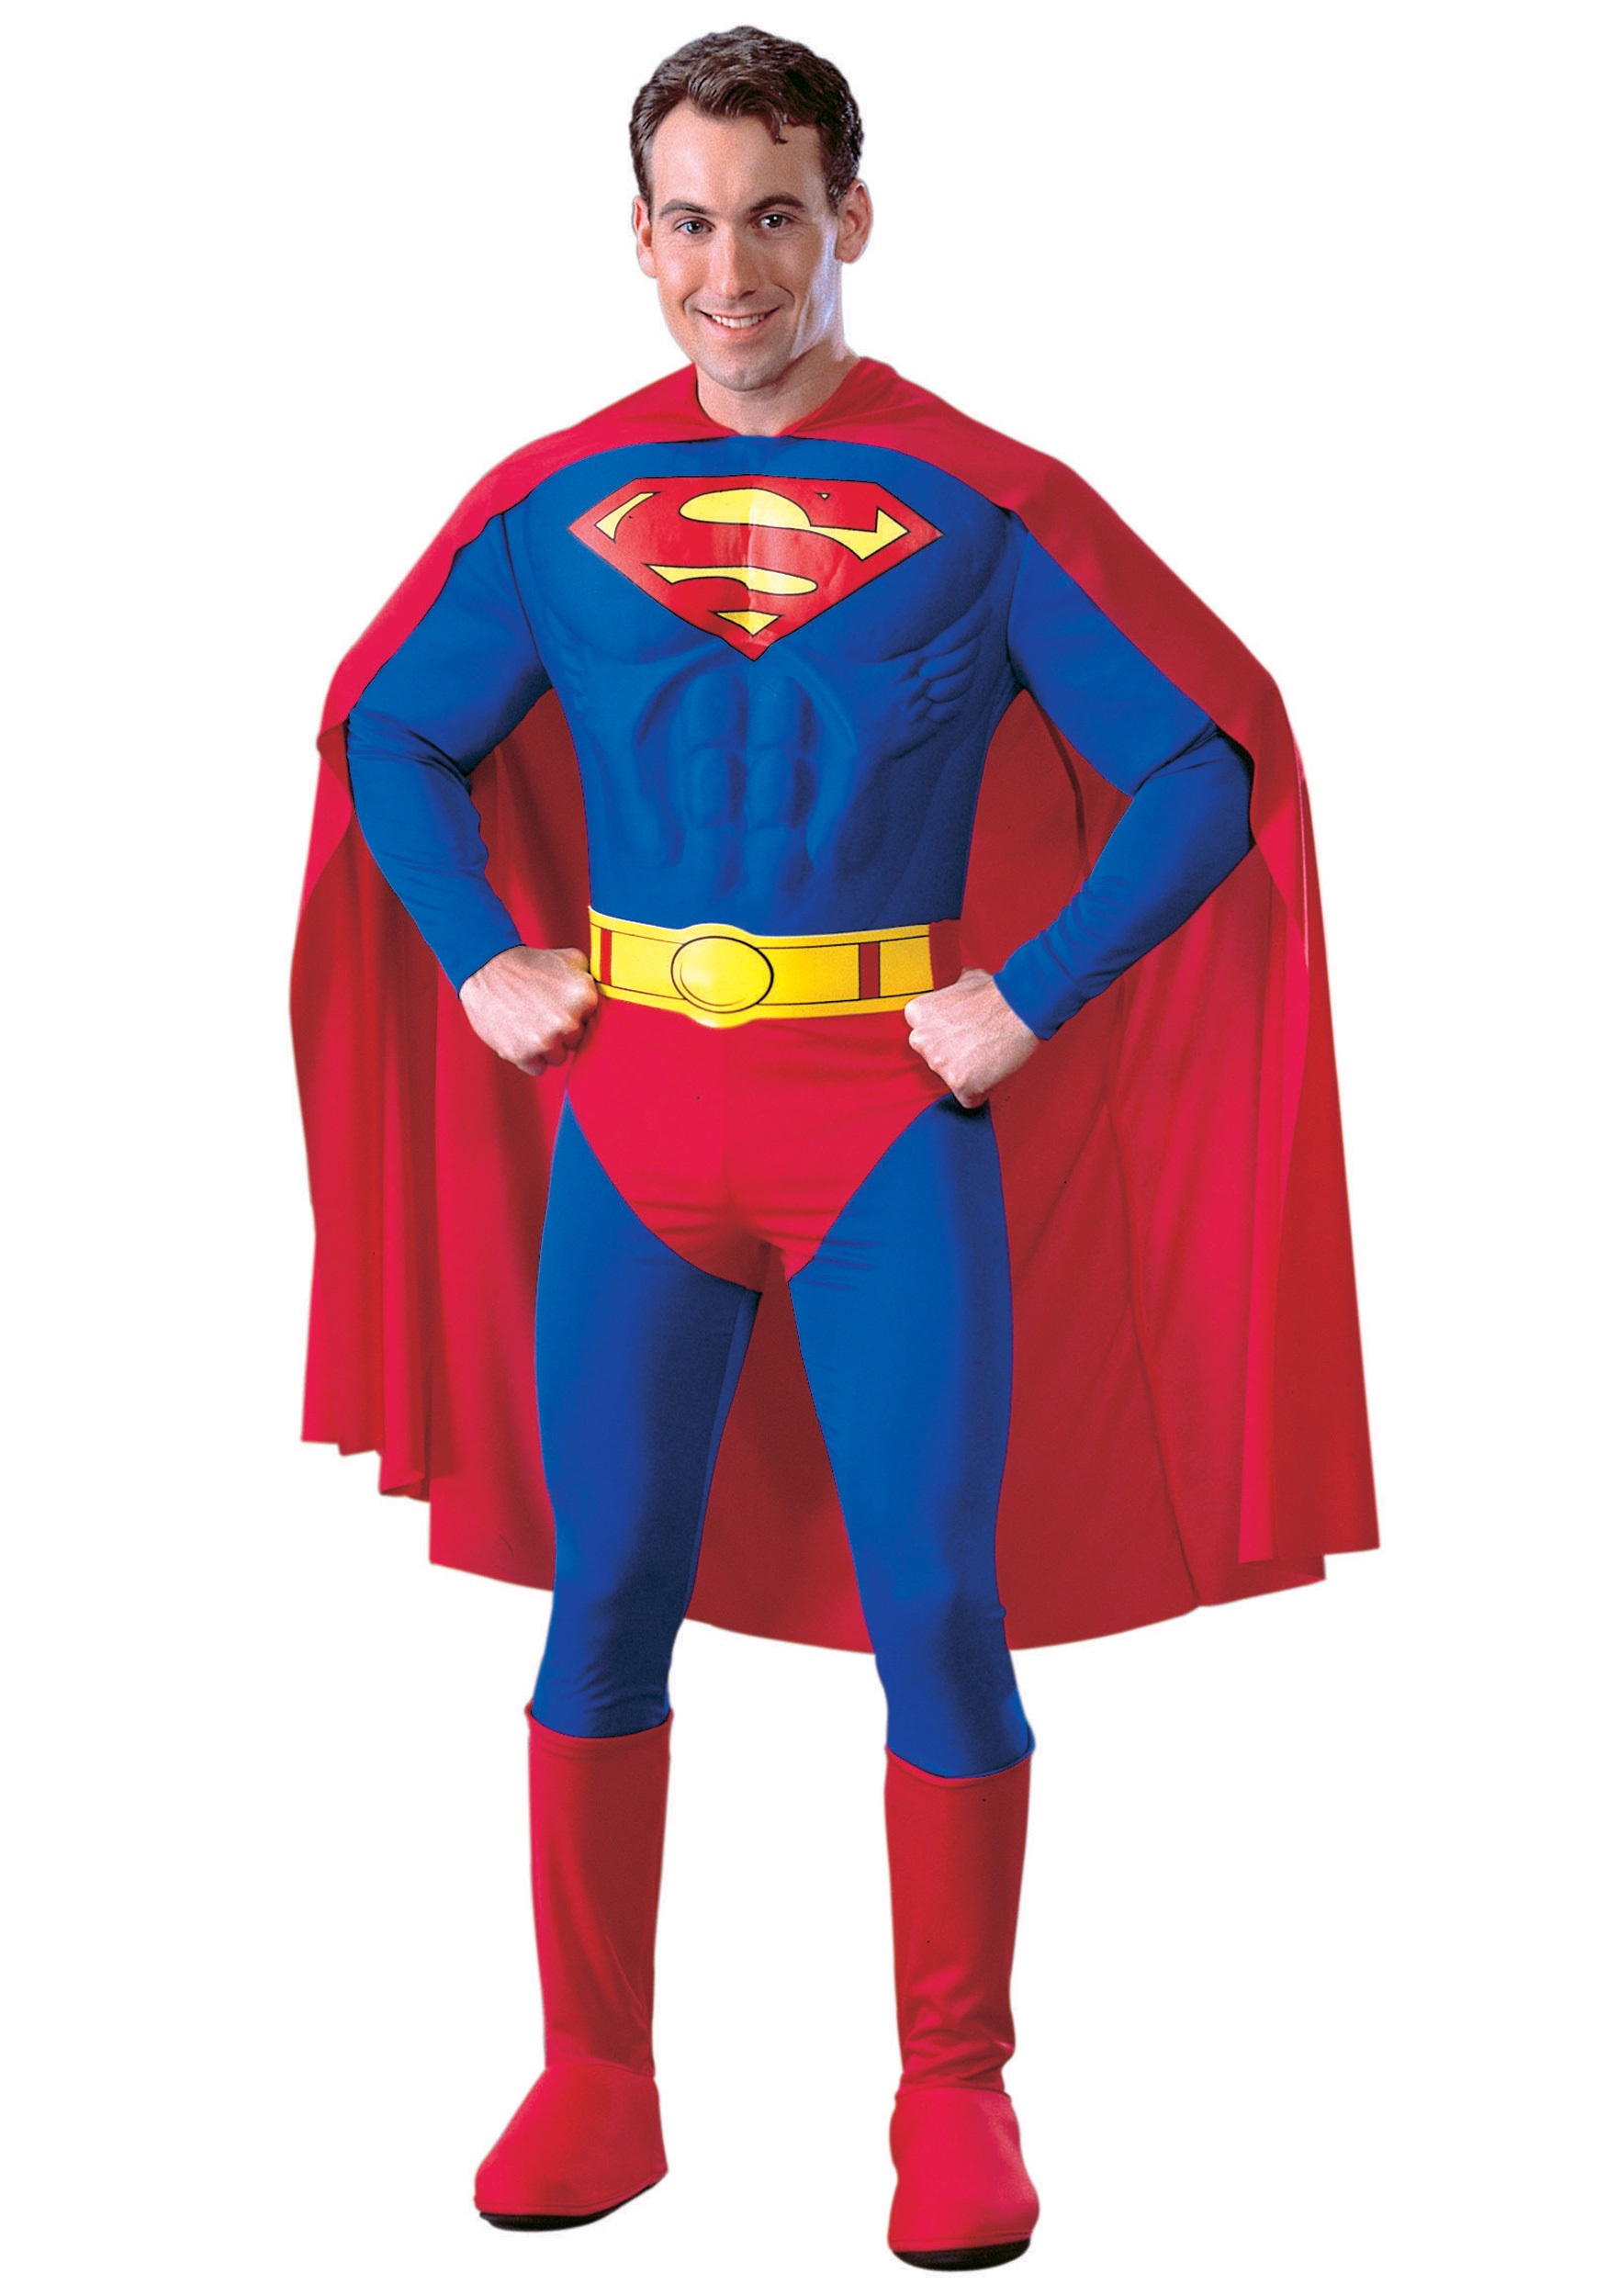 Image of Superman Movie Costume ID RU888016-M